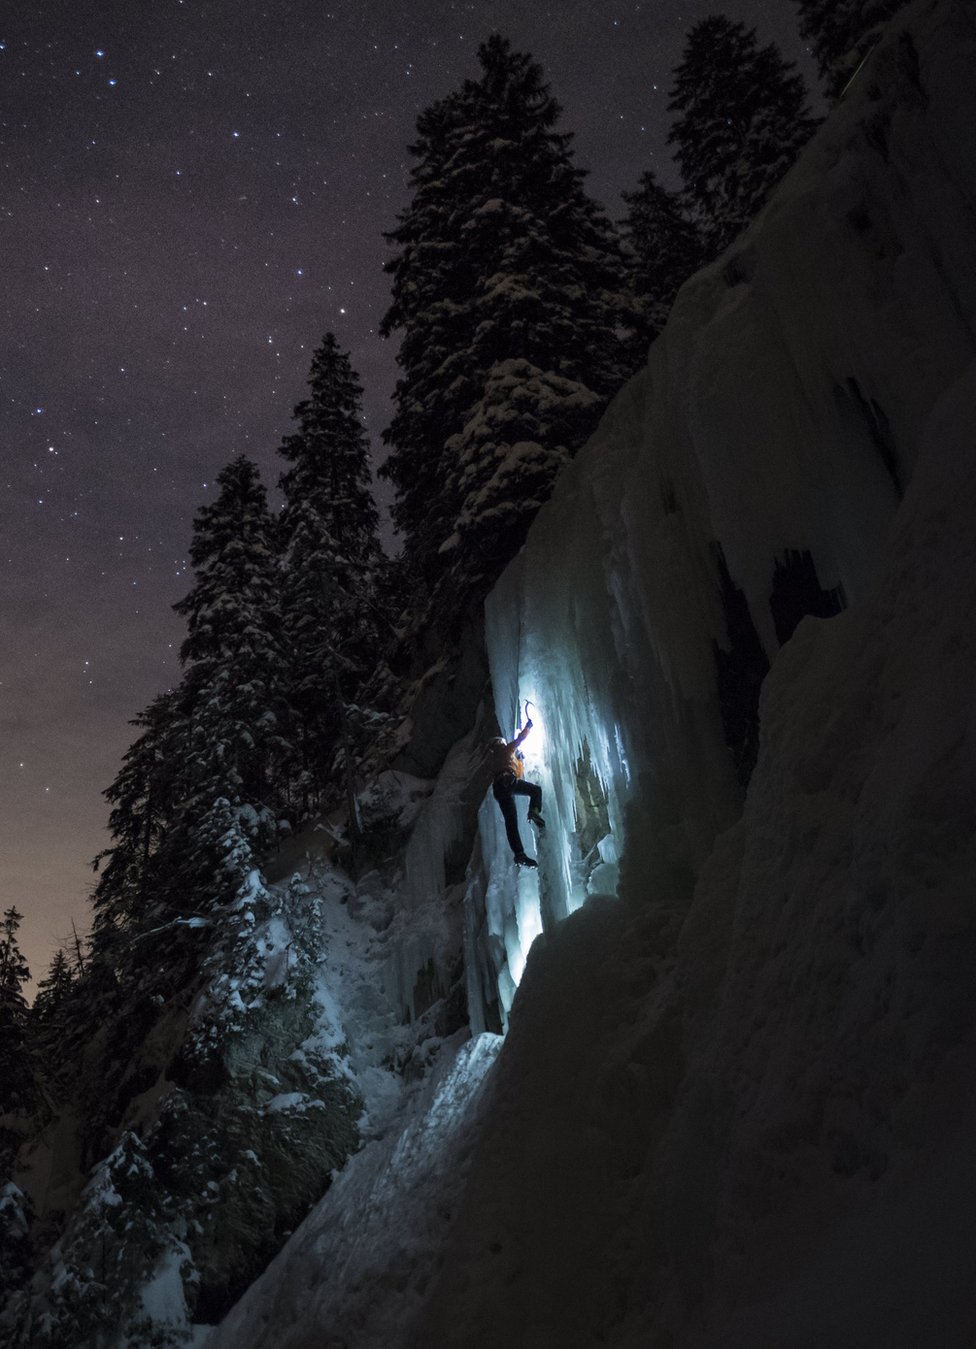 متسلق يصعد في شلال متجمد خلال ليلة مضاءة بالنجوم في مقاطعة فود بسويسرا.